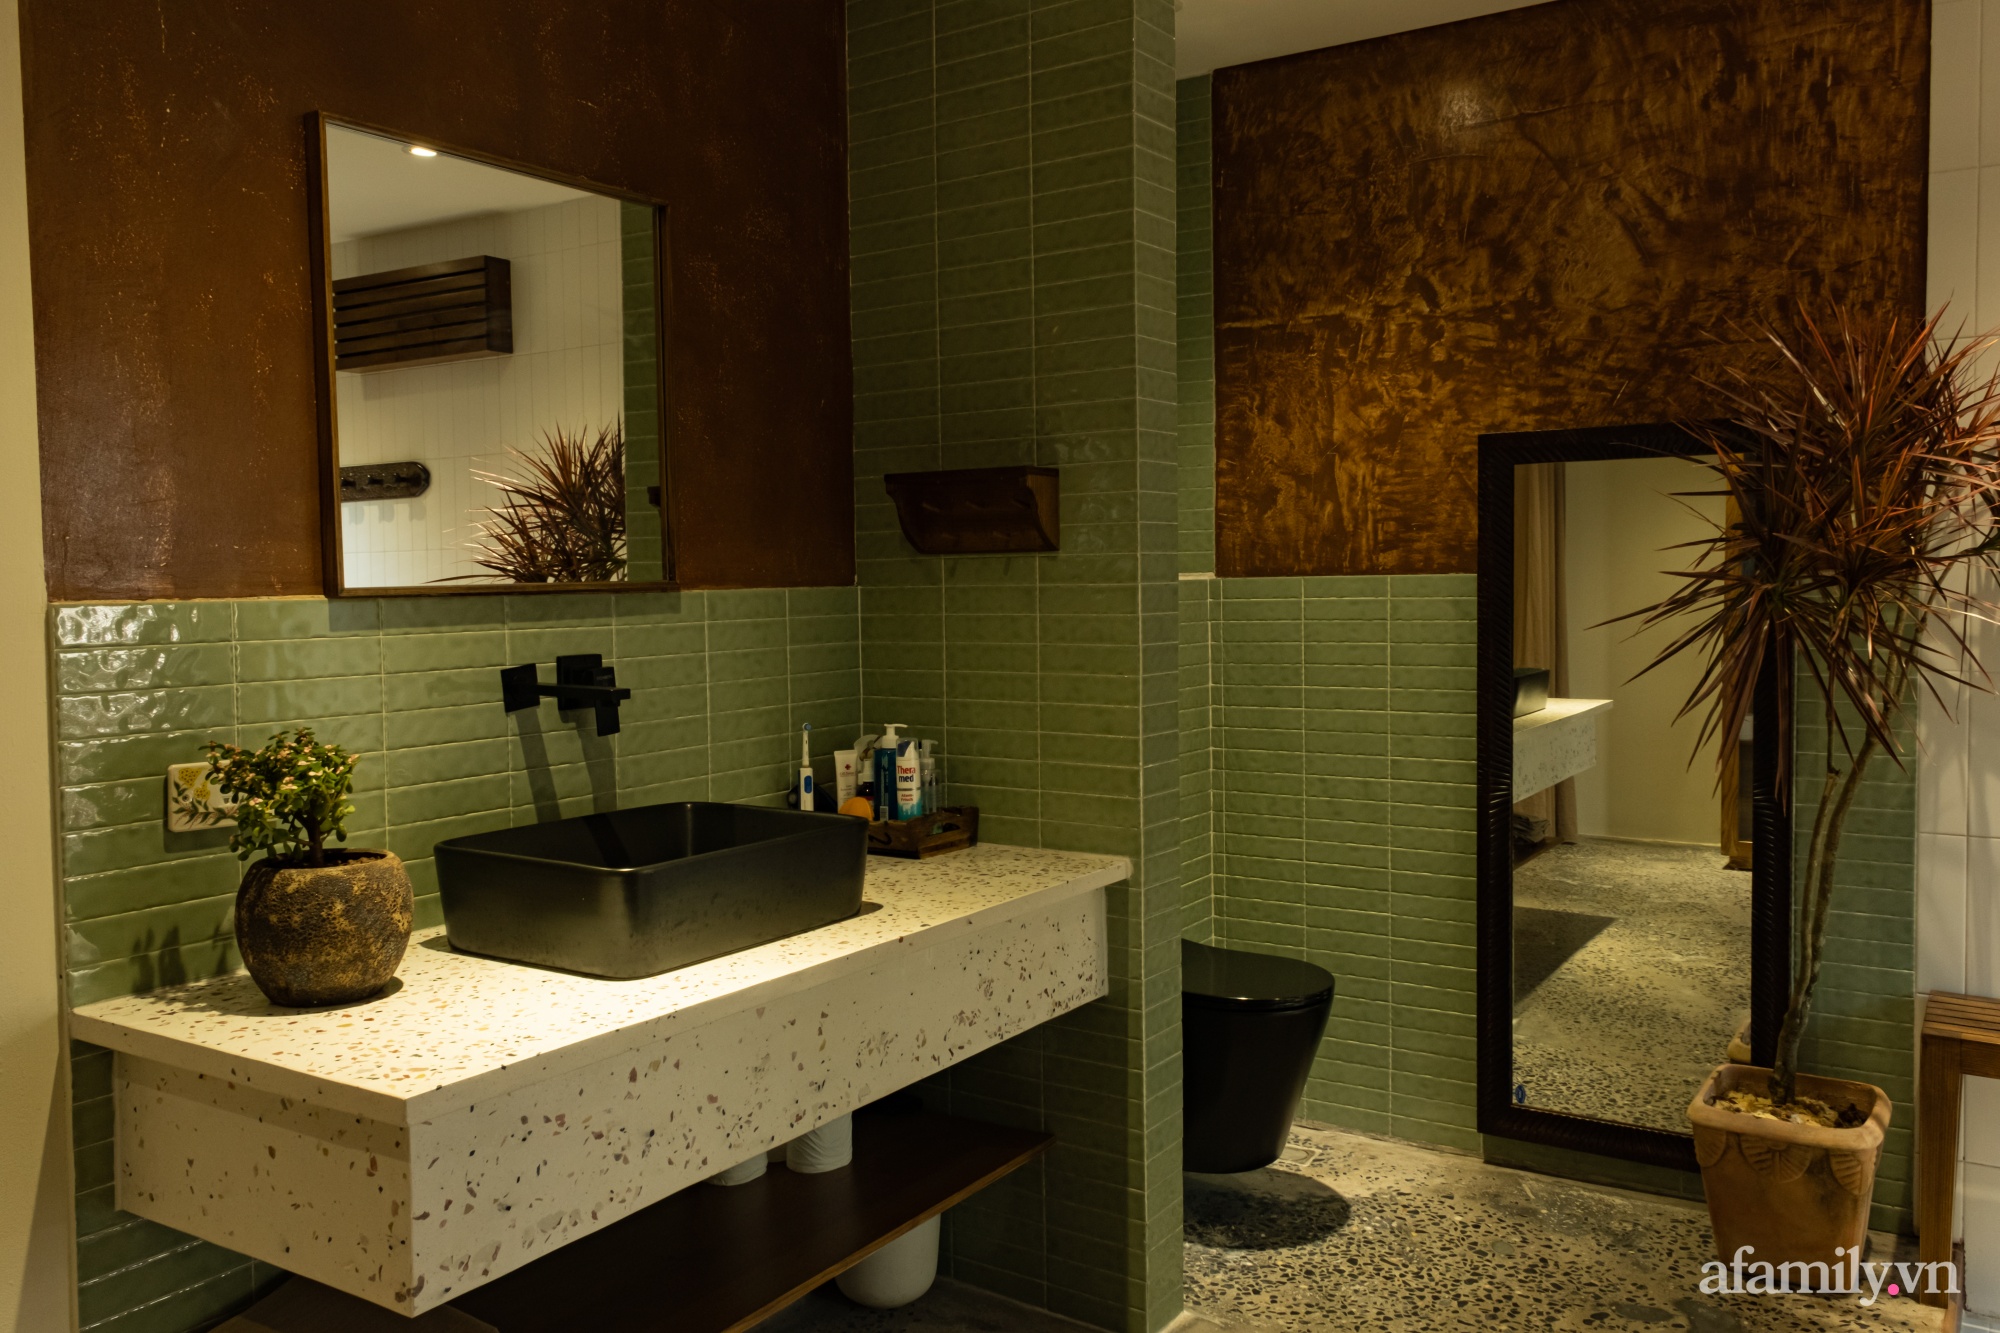 Phòng tắm kết hợp nơi thay đồ đẹp bình yên với sắc màu bản địa có chi phí 200 triệu đồng ở ngoại thành Hà Nội - Ảnh 5.